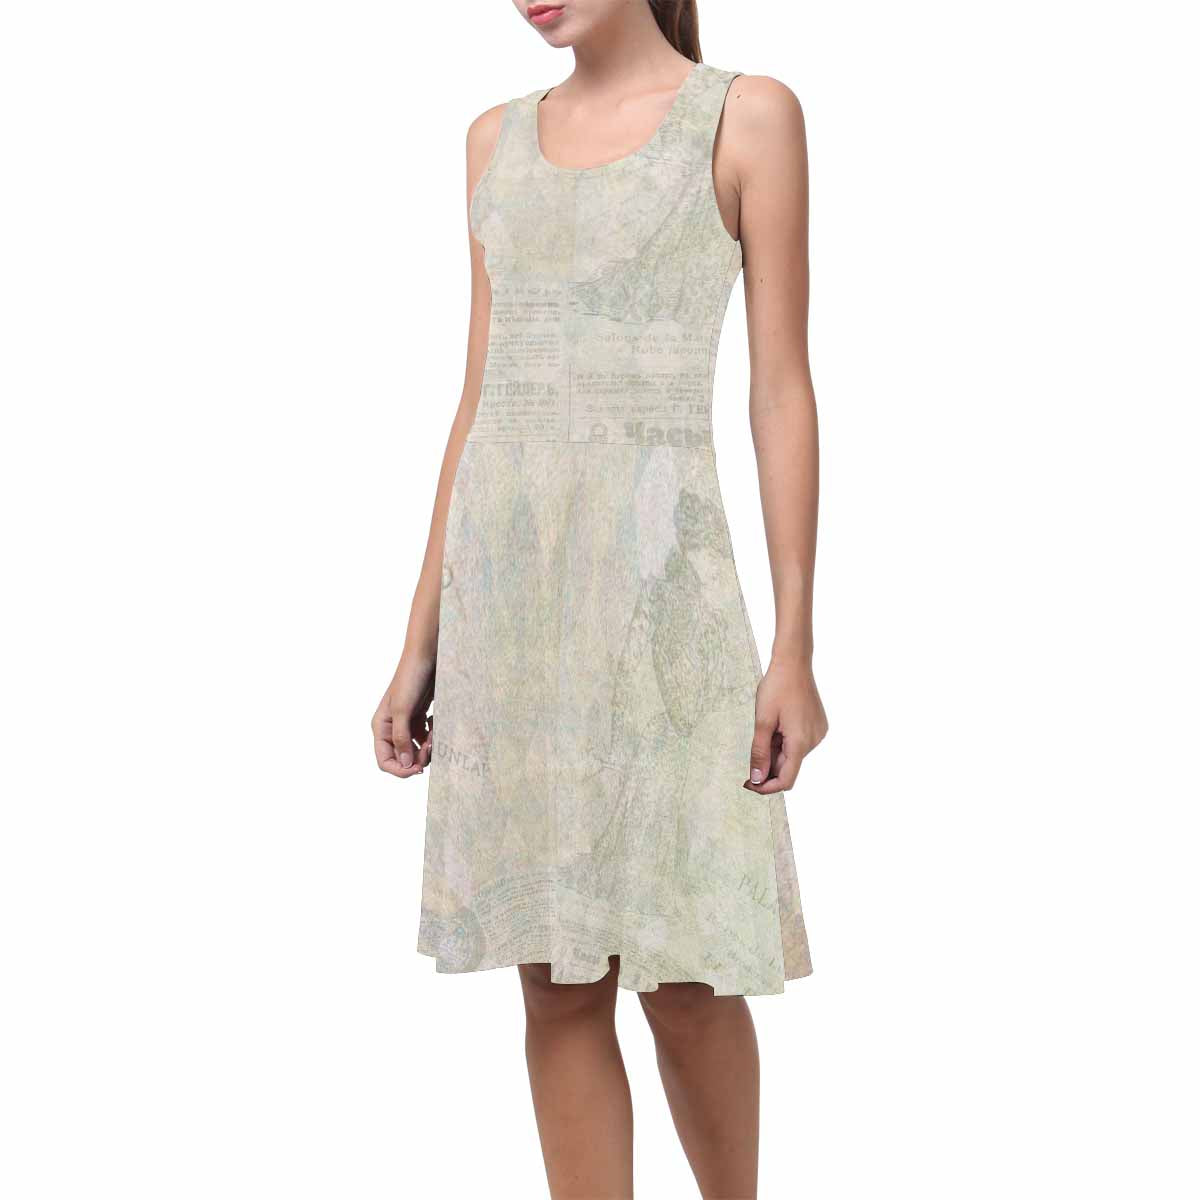 Antique General summer dress, MODEL 09534, design 27